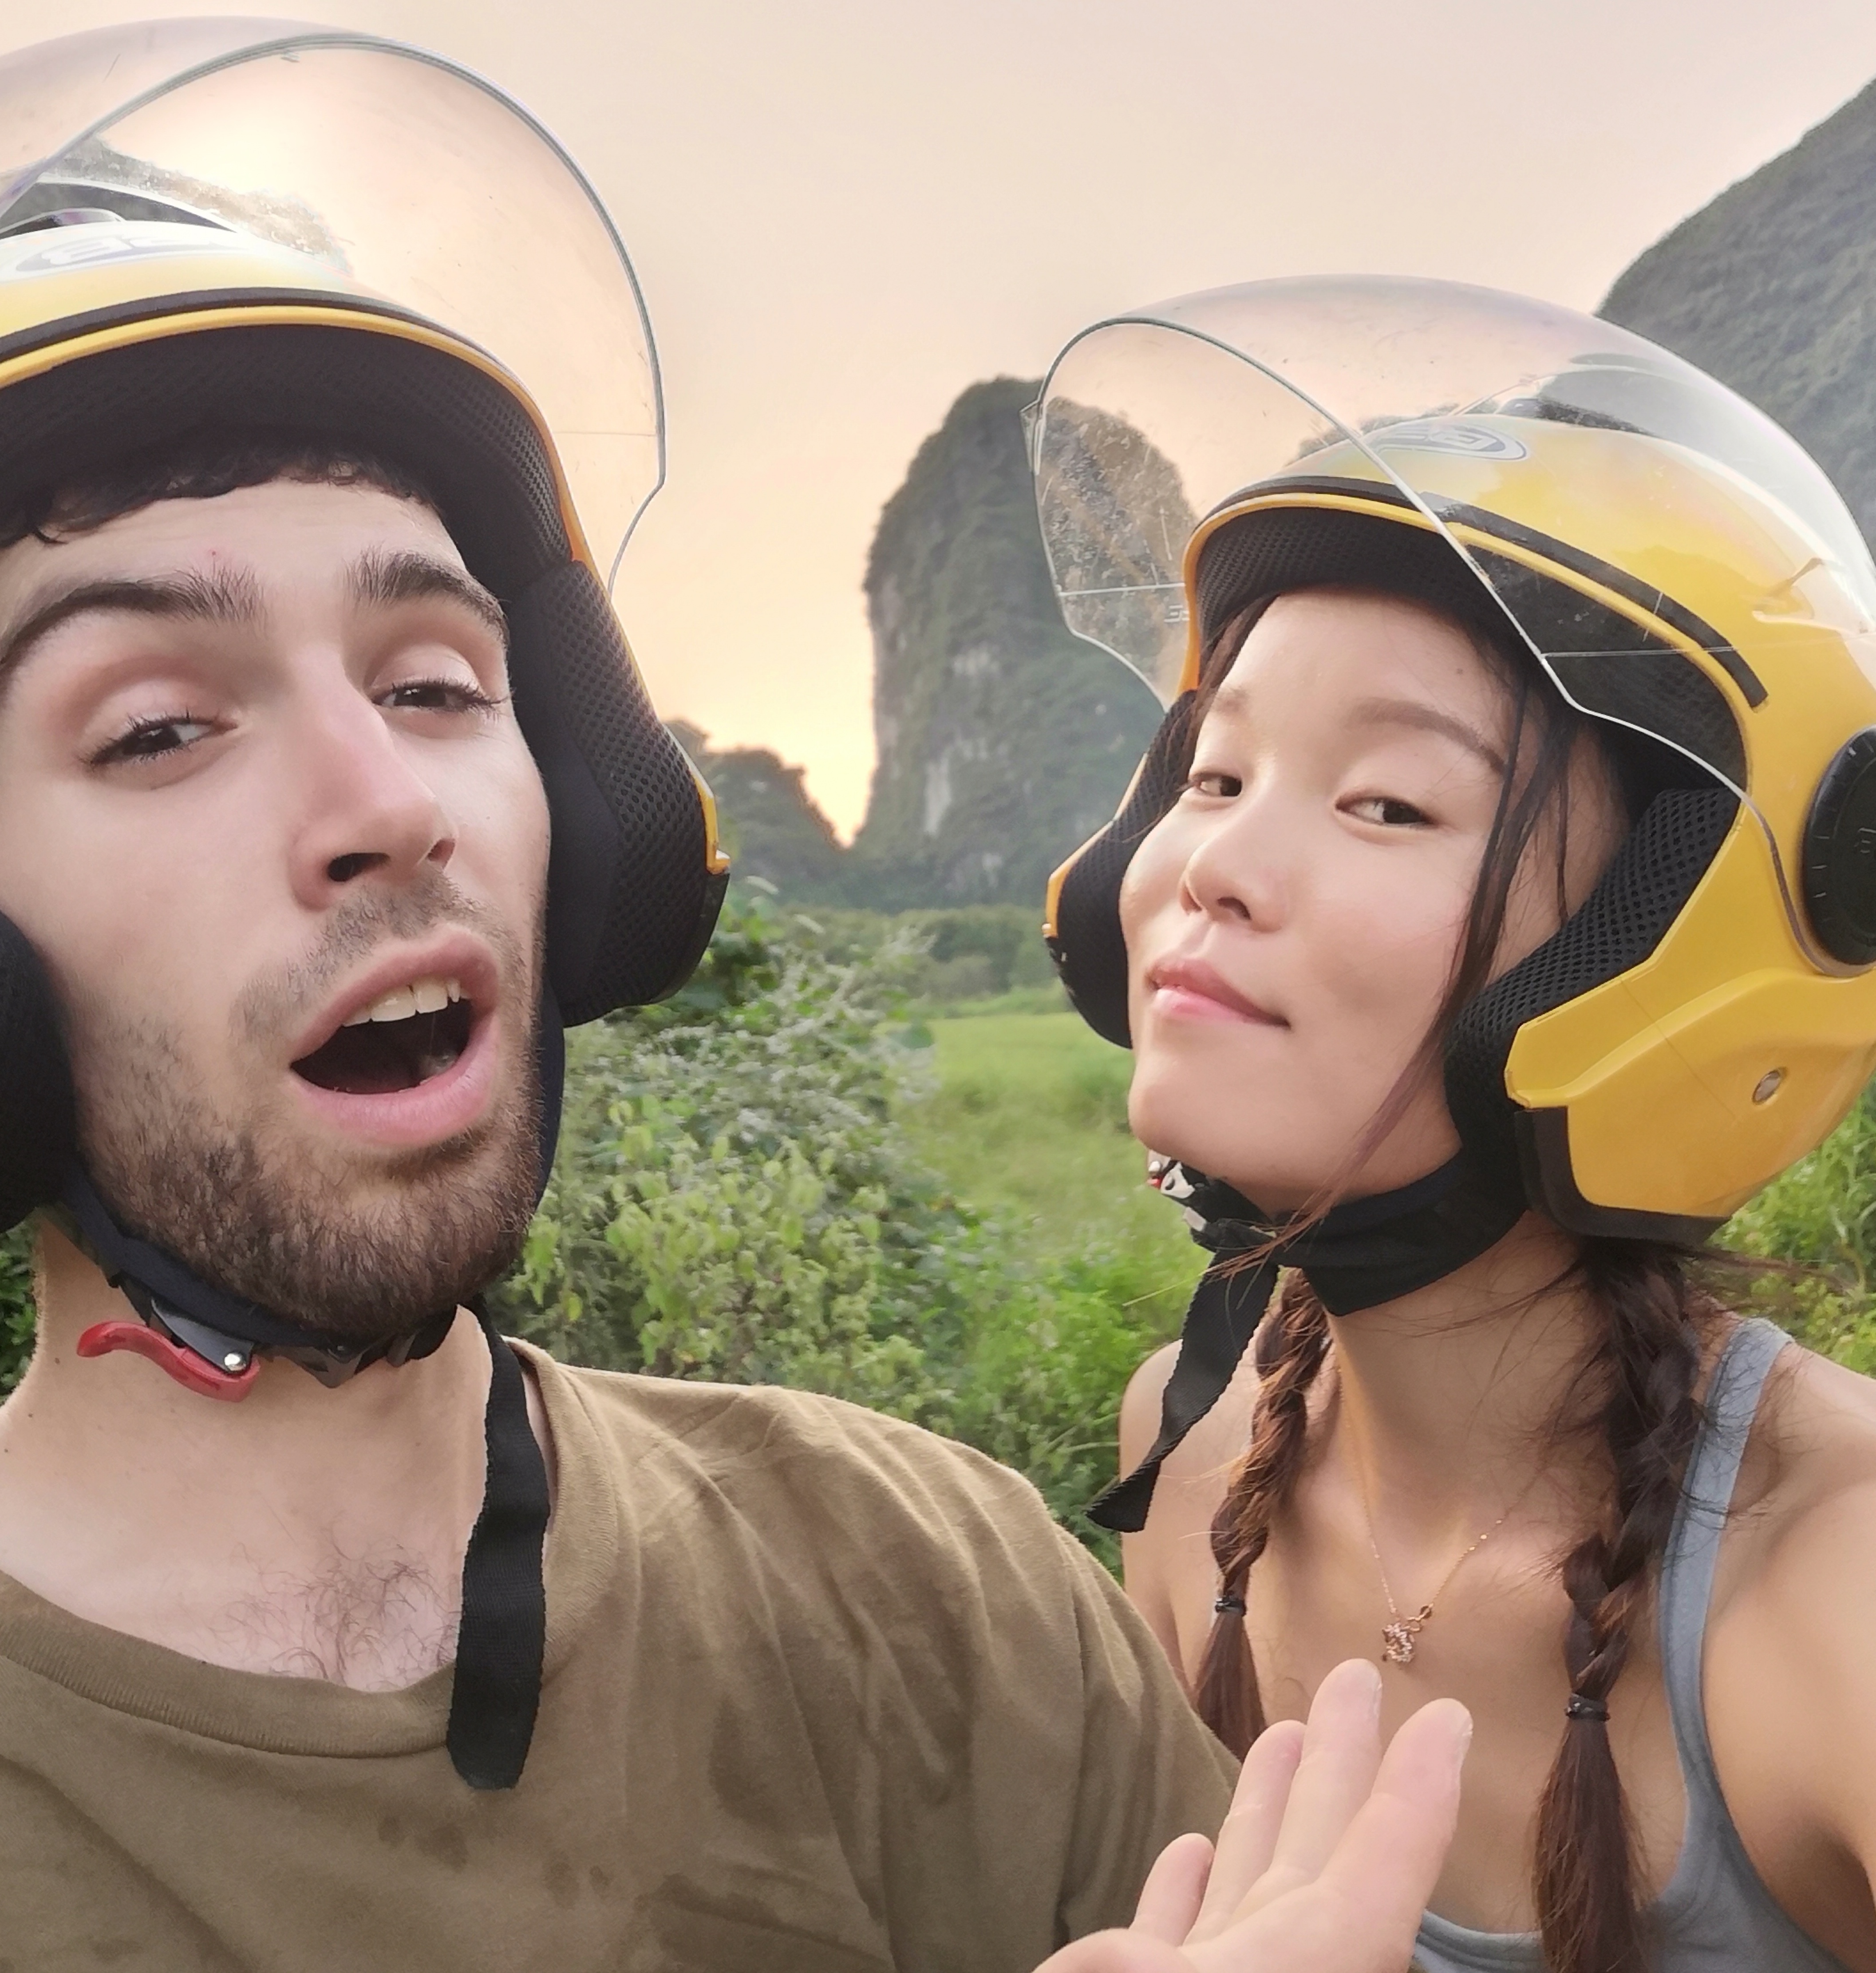 Scott and Ella goofing around in helmets